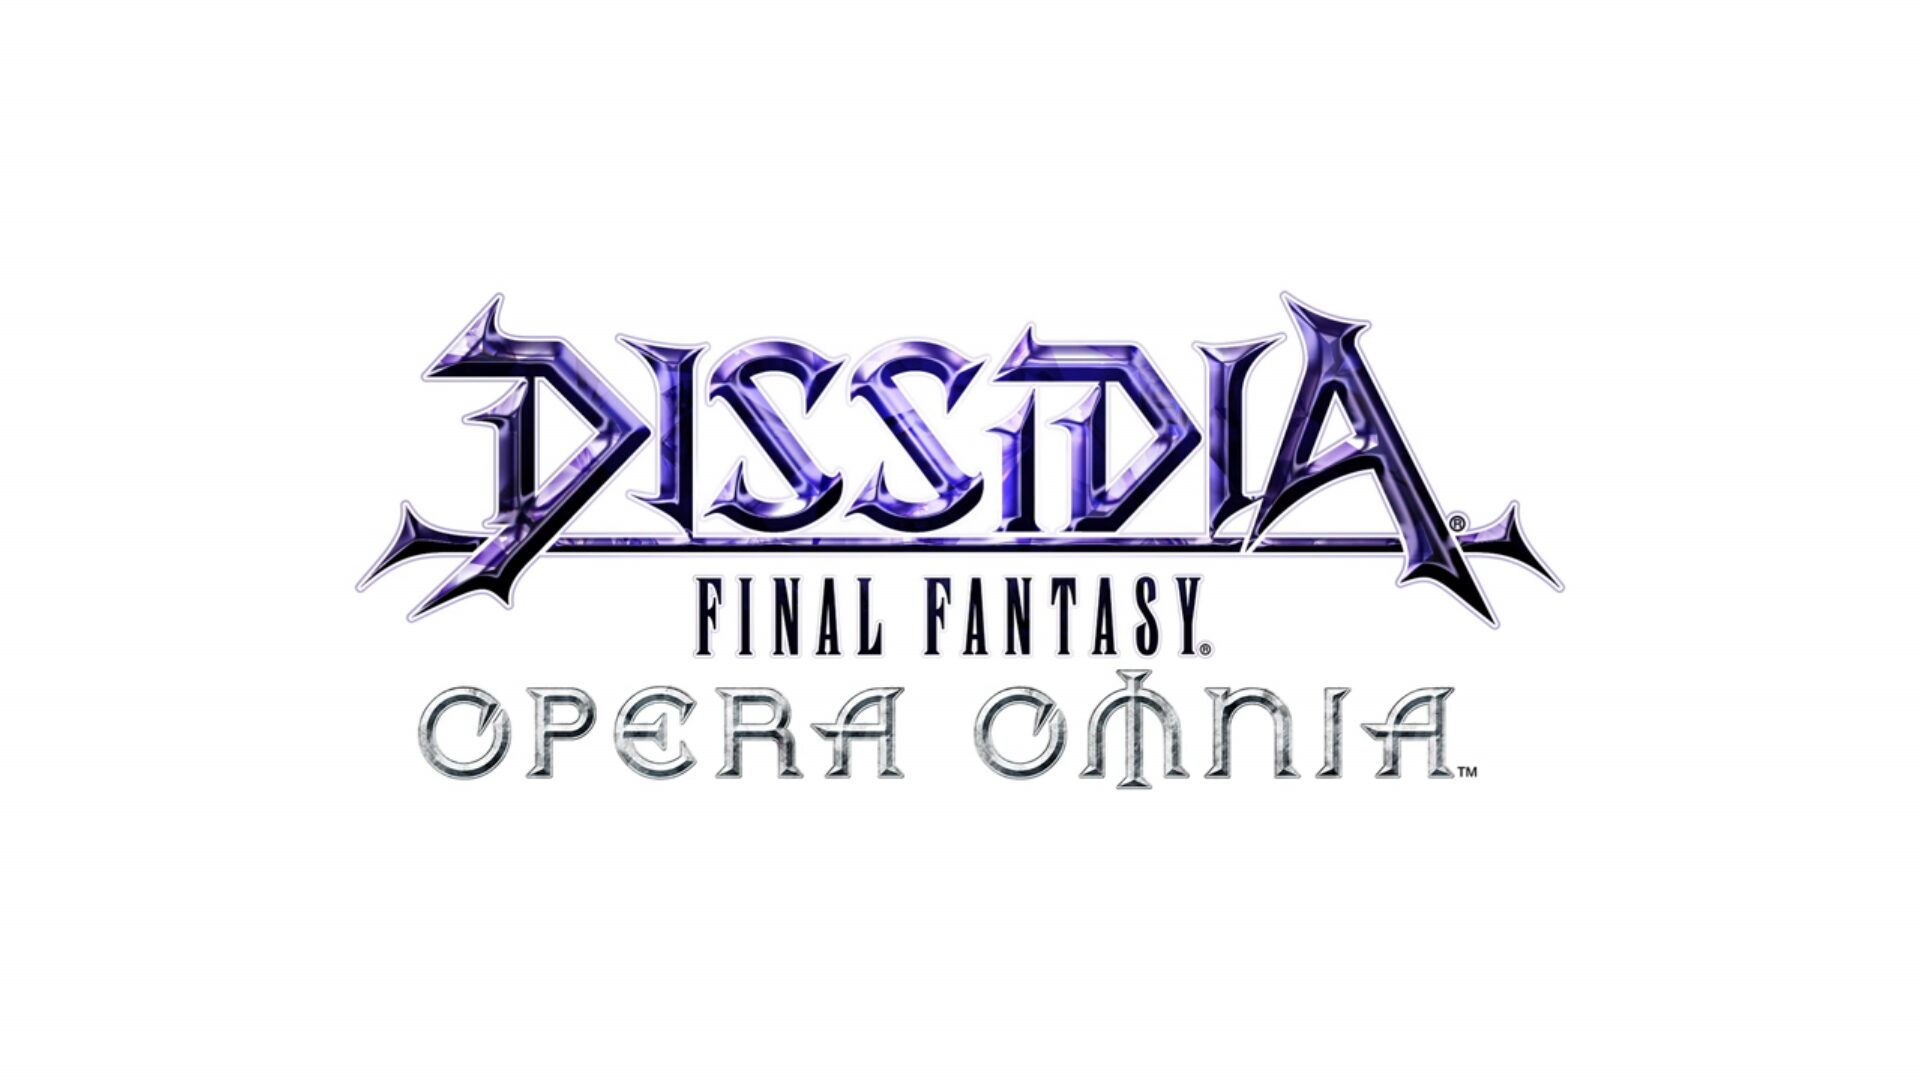 Dissidia Final Fantasy Opera Omnia Heading Stateside